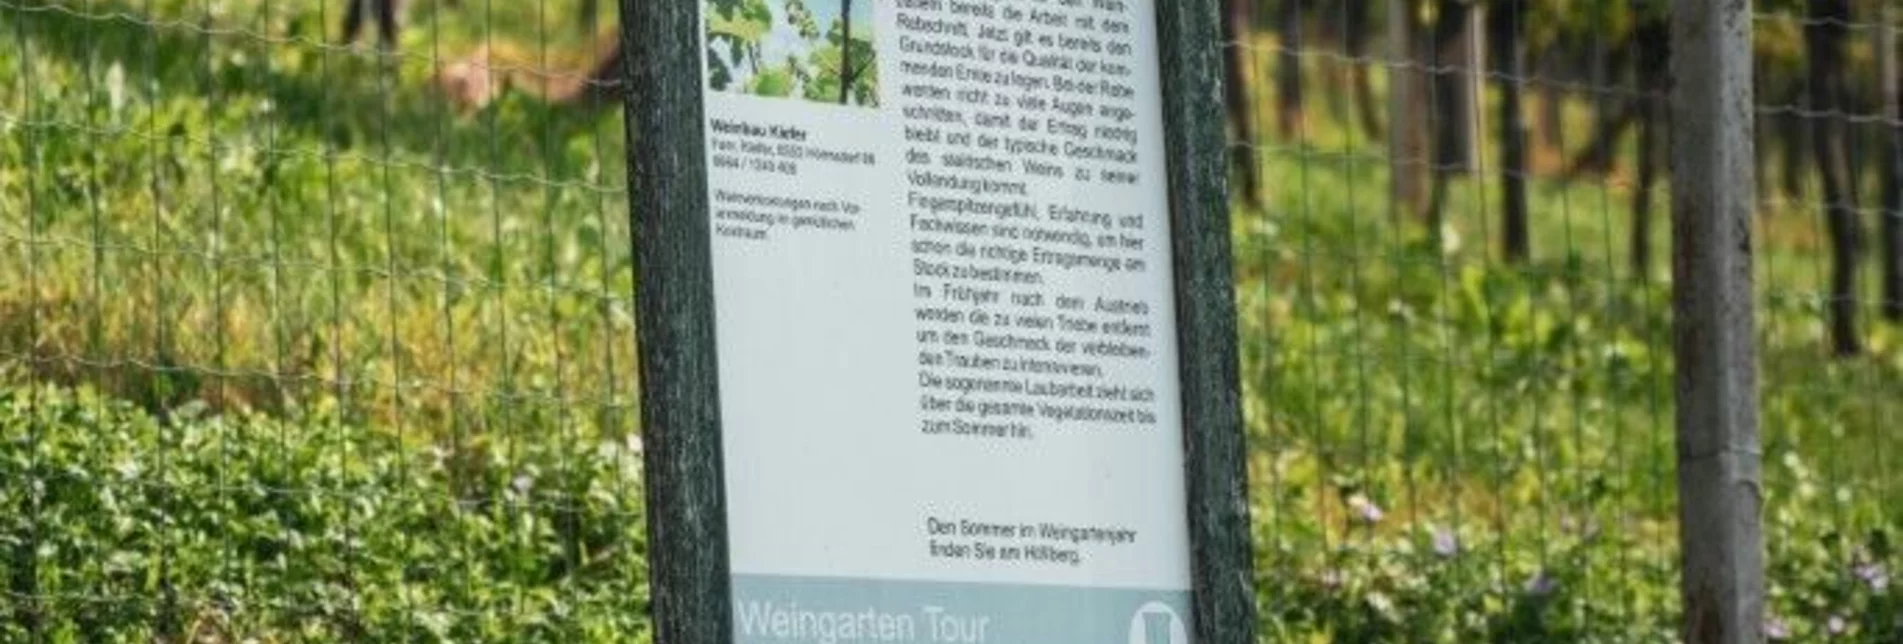 Hiking route Weingarten Tour – Tour 34 lt. WK „Von der Alm zum Wein“ - Touren-Impression #1 | © Südsteiermark